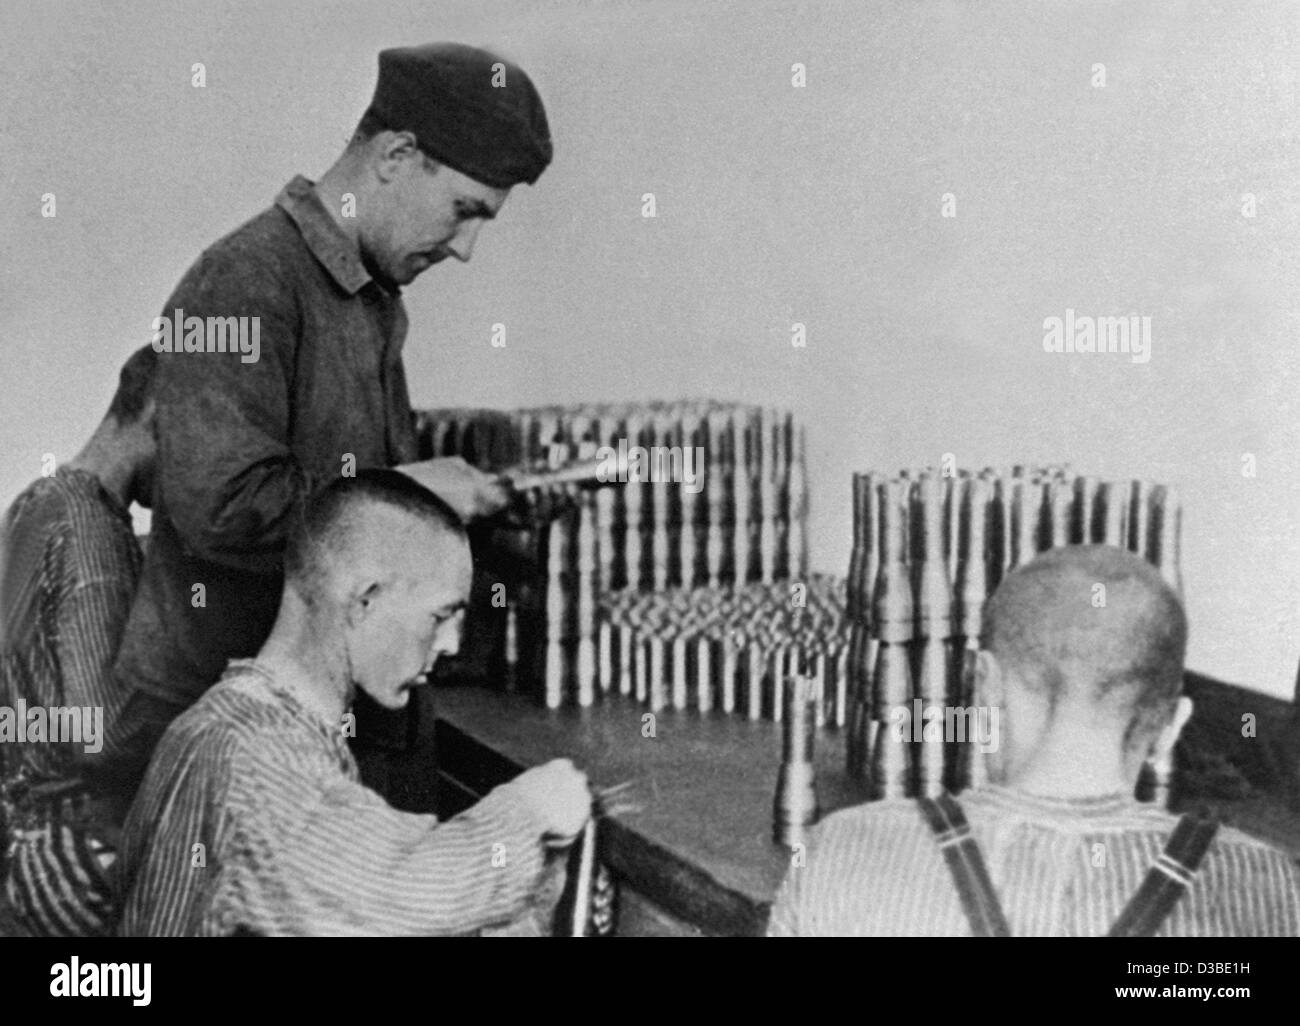 Los archivos de datos (DPA) - Los prisioneros del campo de concentración de Dachau fabricar material de guerra cerca de Dachau, en el sur de Alemania (sin fecha filer). Muchos prisioneros de campos de concentración eran obligados a trabajar en la industria de armamento durante la Segunda Guerra Mundial, así como a construir bunkers, operar maquinaria industrial y trabajo Foto de stock